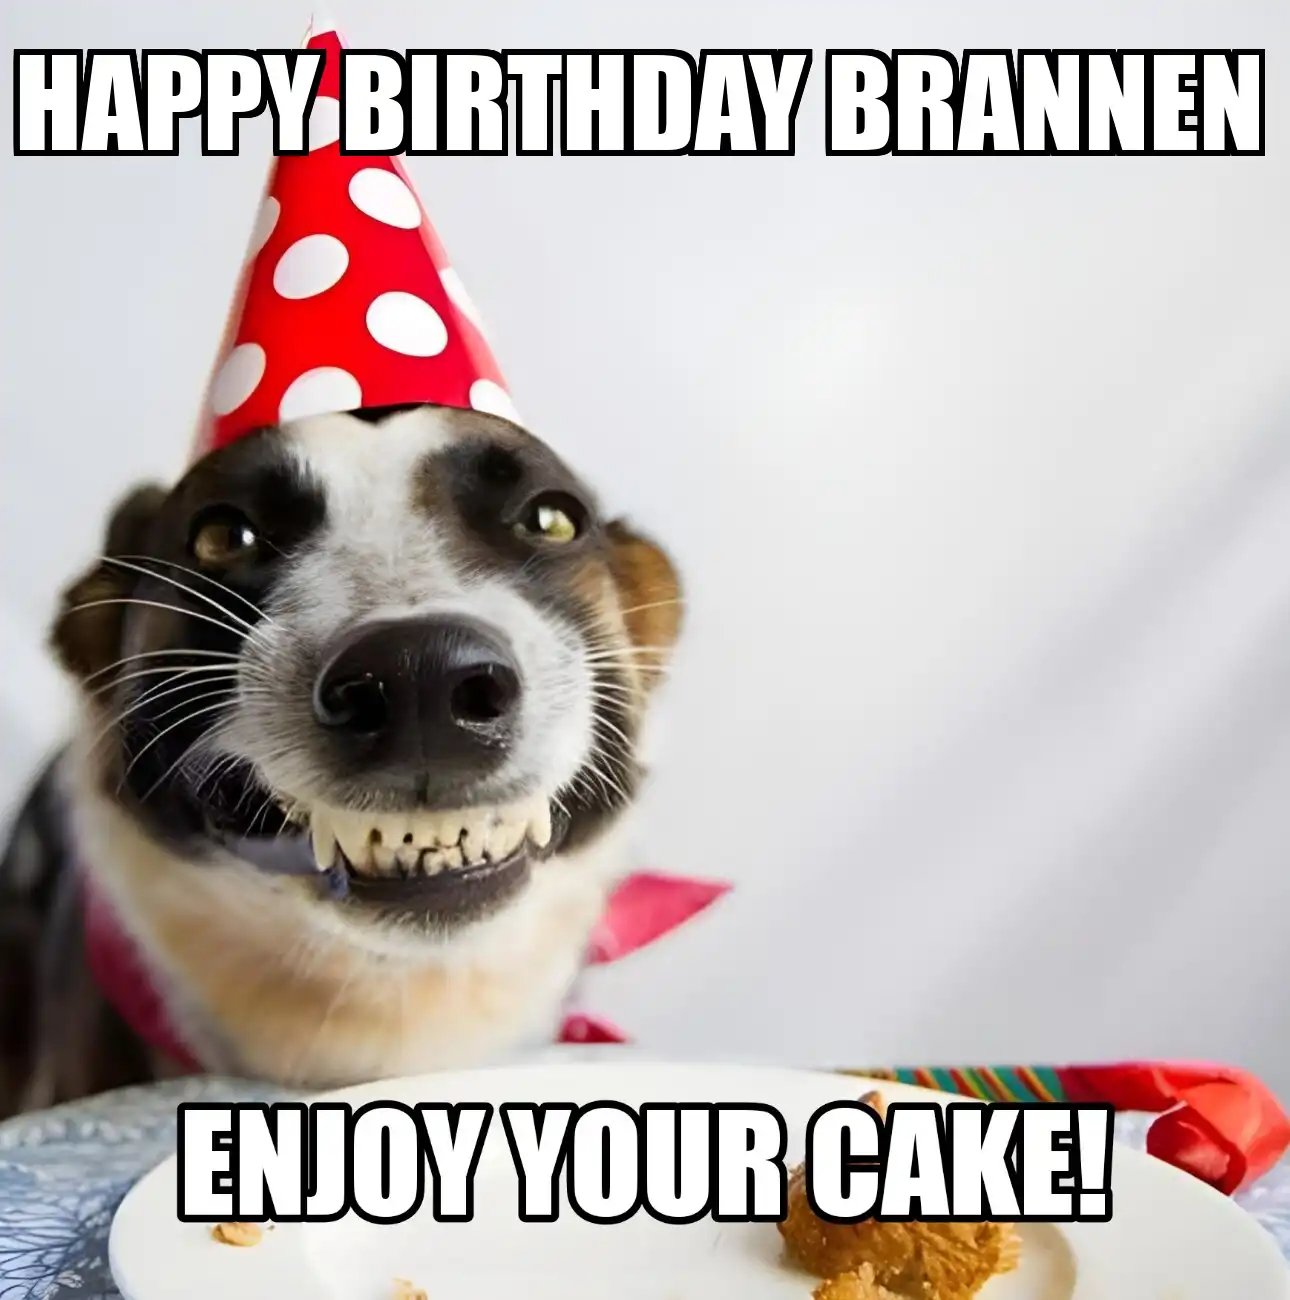 Happy Birthday Brannen Enjoy Your Cake Dog Meme